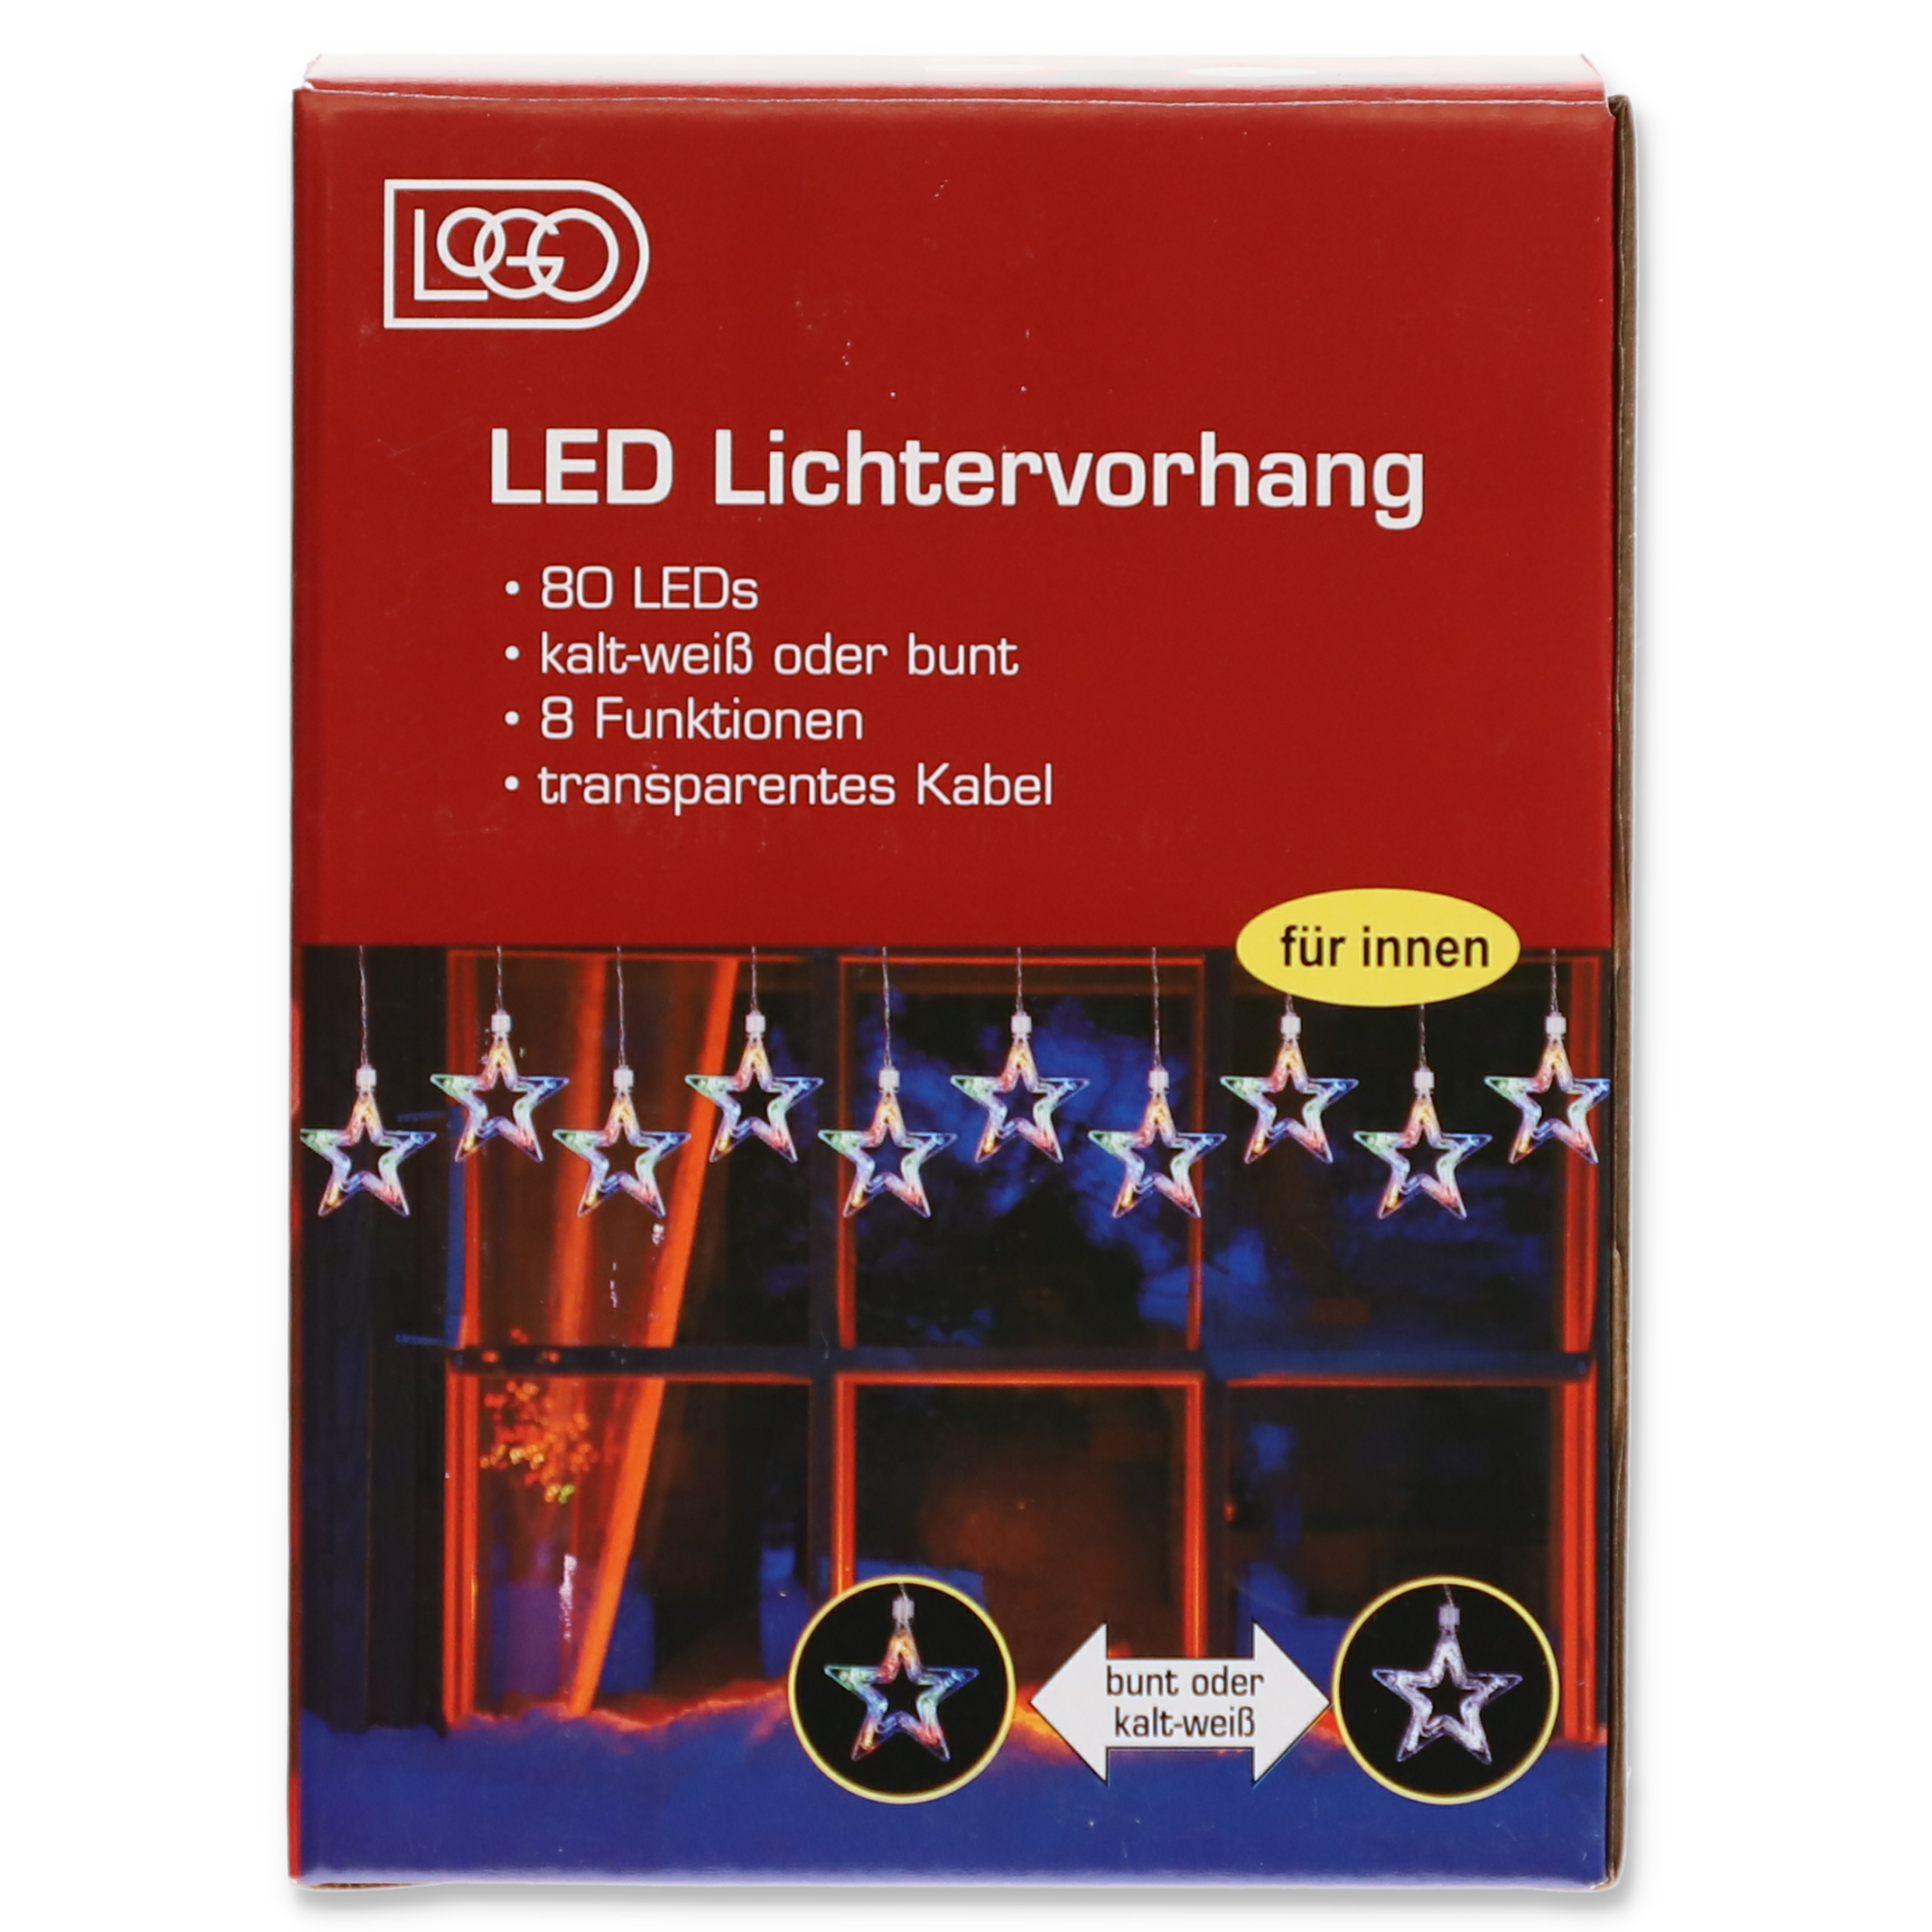 LED-Lichtervorhang 'Sterne' weiß, bunt + product picture